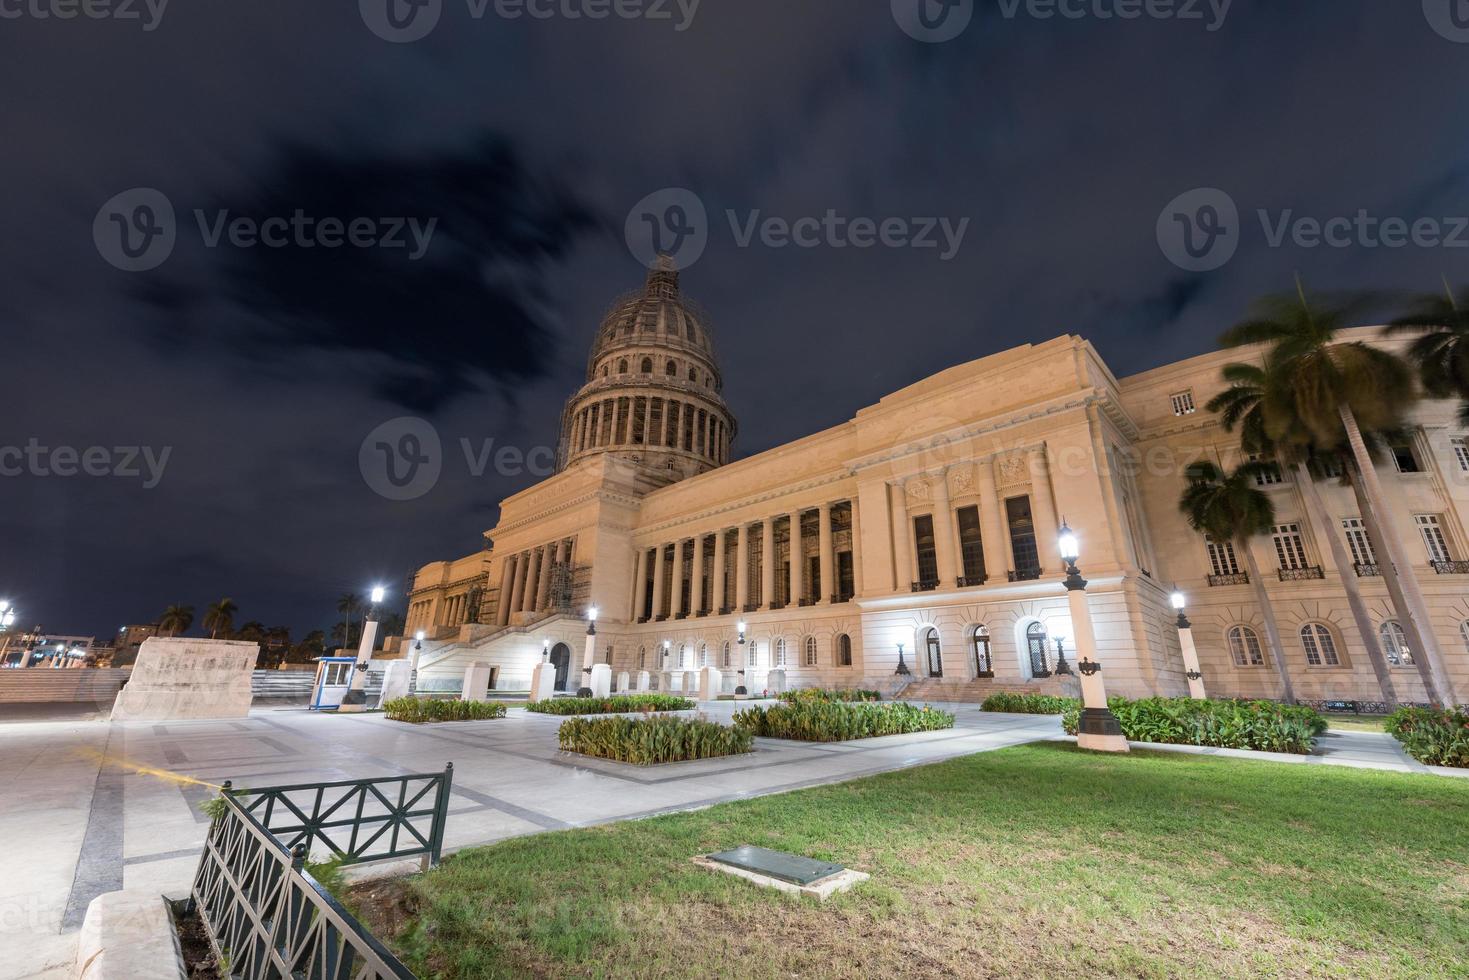 bâtiment de la capitale nationale au crépuscule à la havane, cuba. photo